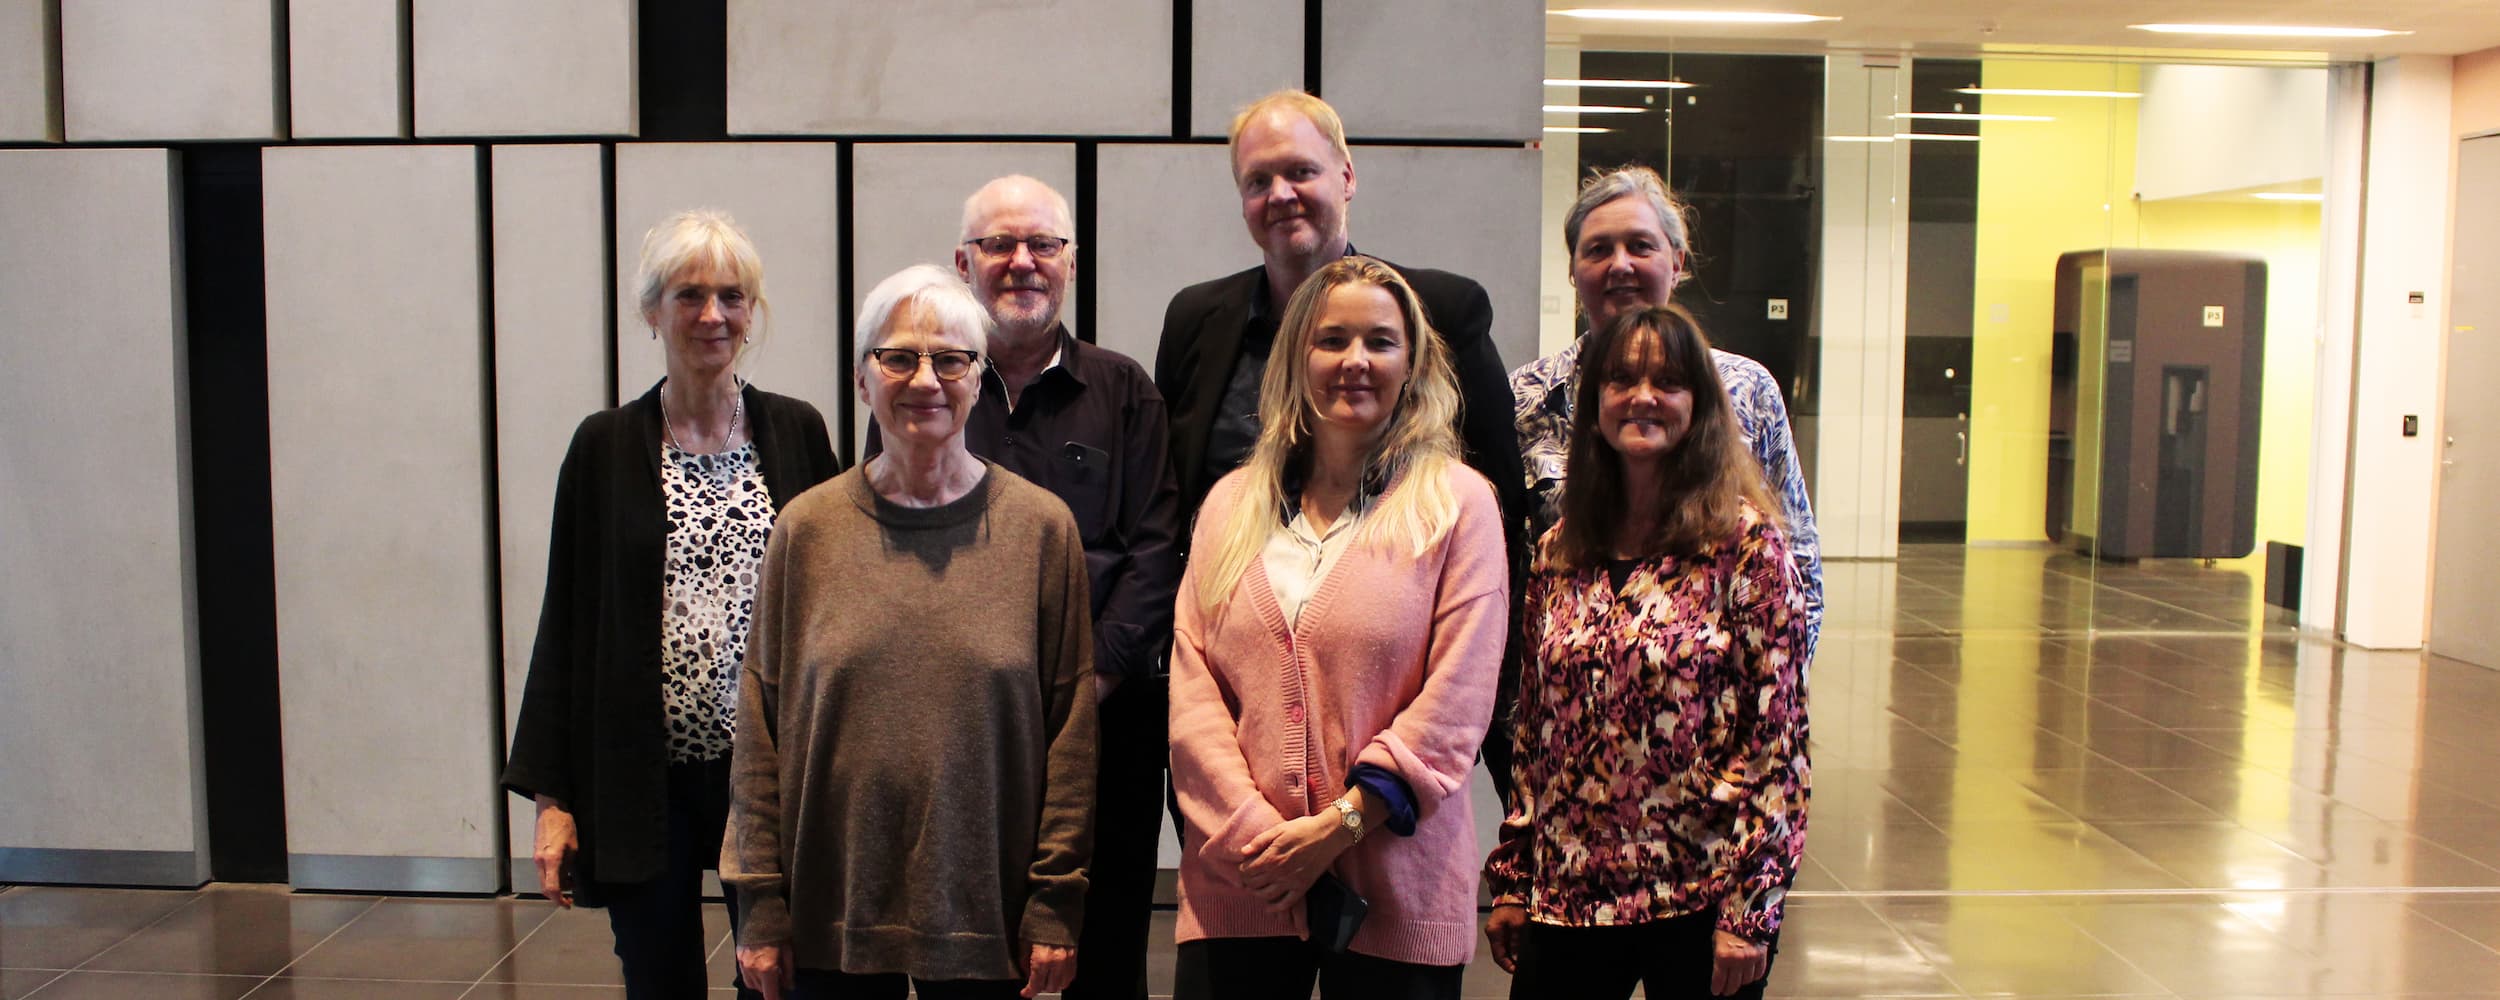 Gruppefoto af den nye bestyrelse i Ørestad Nord.